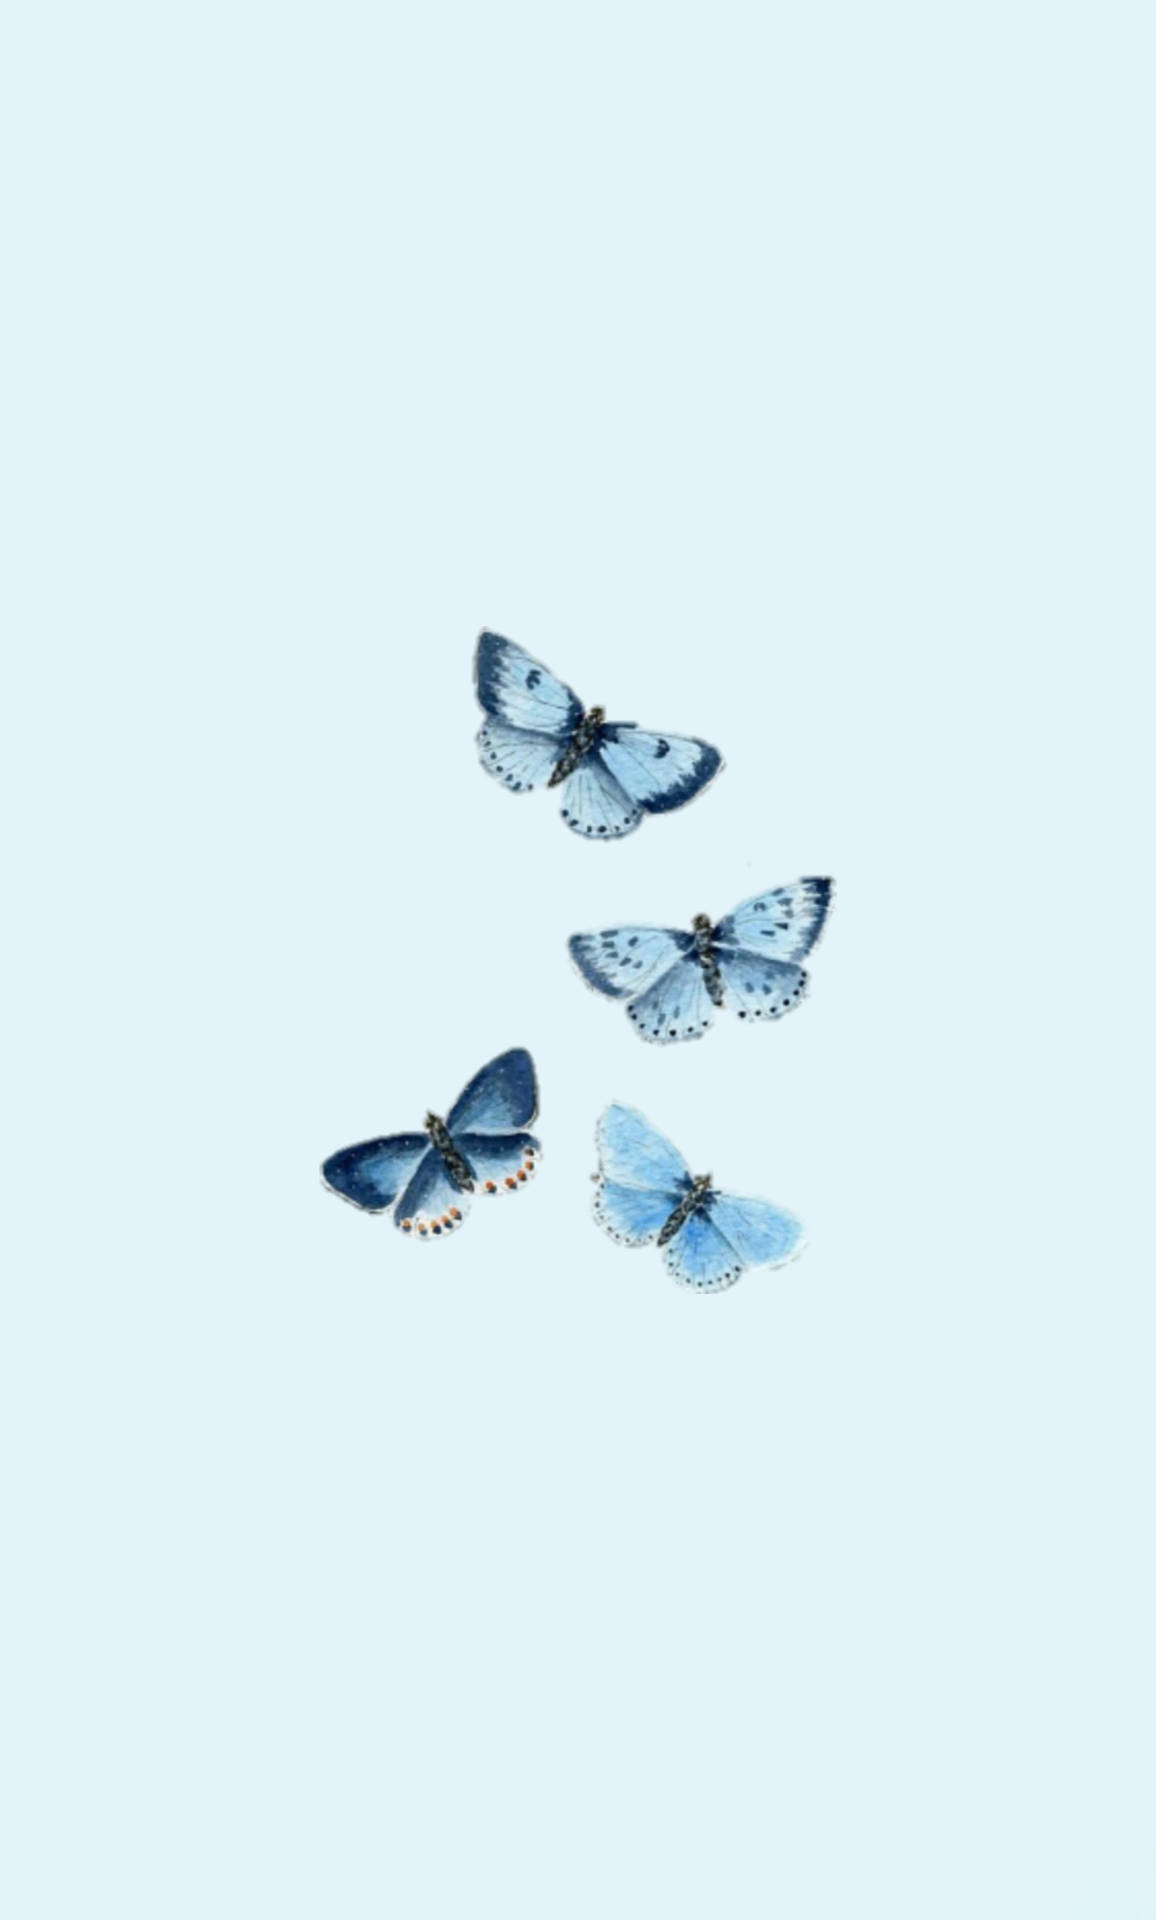 Butterfly Aesthetic Powder Blue Wings